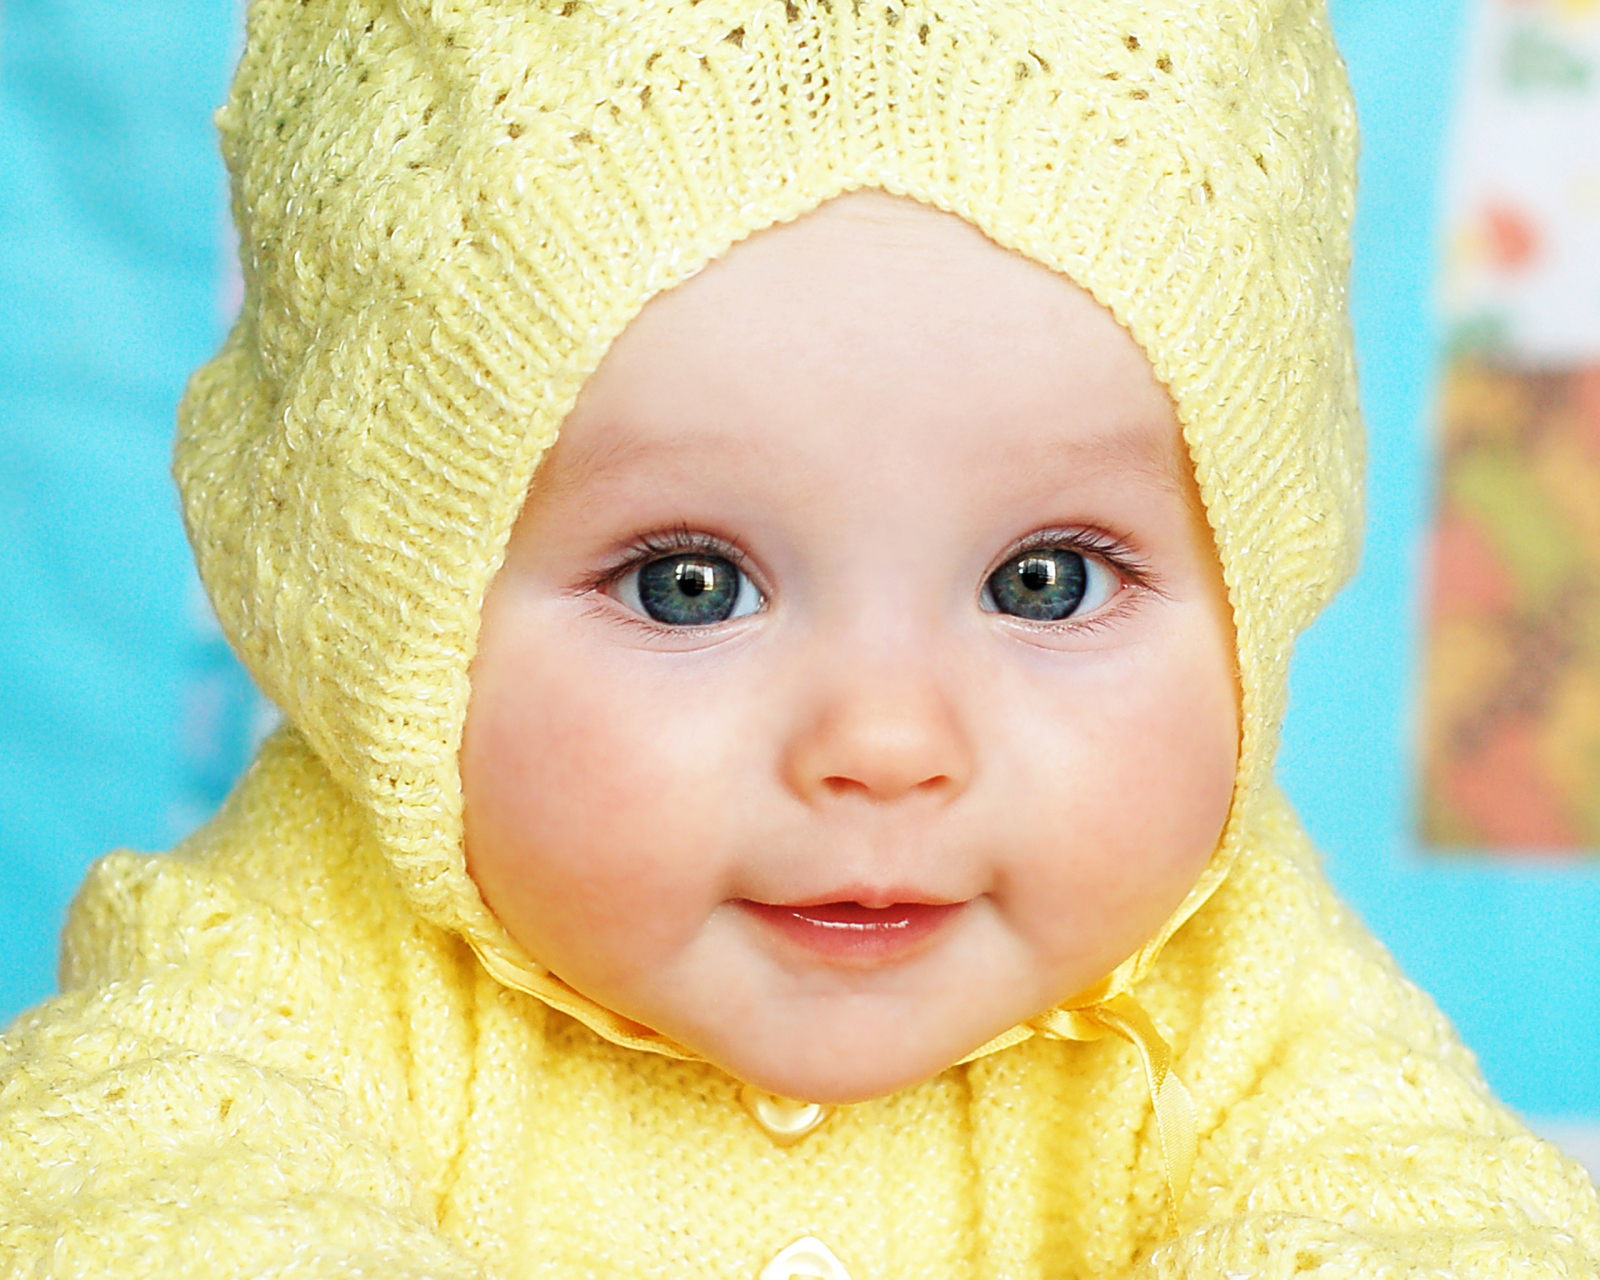 Baby In Yellow Hood wallpaper 1600x1280